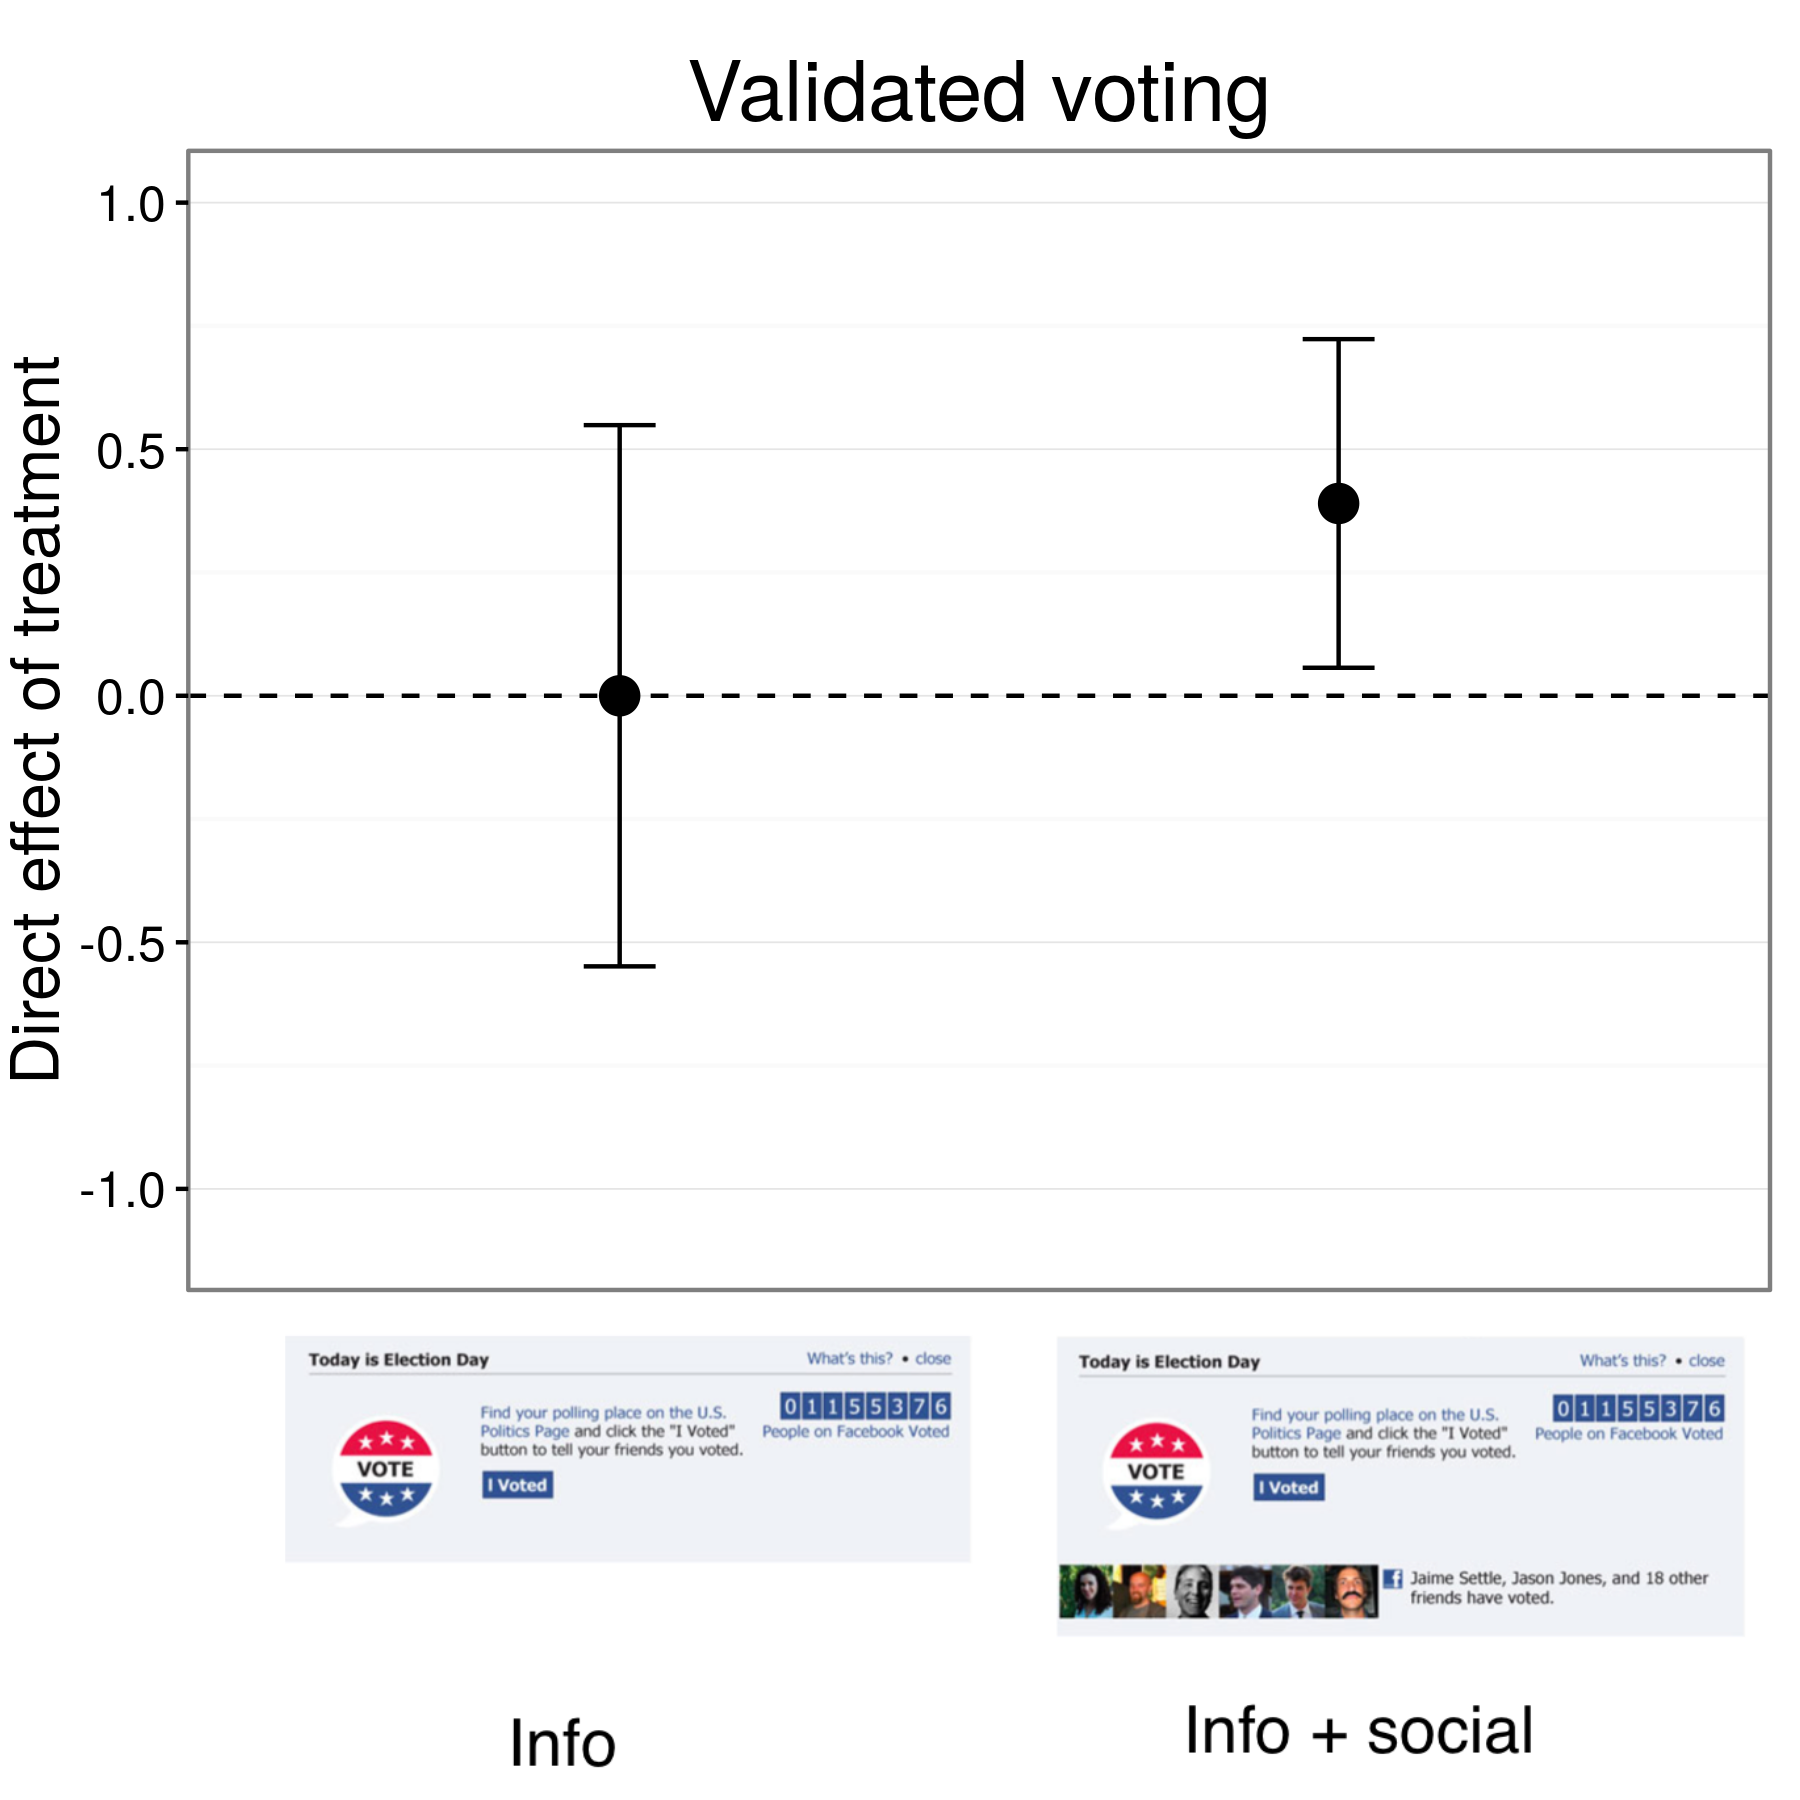 Slika 4.17: Rezultati iz get-out-the-glasovanje eksperiment na Facebooku (Bond et al 2012).. Udeleženci v skupini info glasovali na isti stopnji kot ljudi v stanju nadzora, vendar ljudje v info + družbeni skupini glasovali na nekoliko višji stopnji. Palice predstavljajo po ocenah 95% intervali zaupanja. Rezultati v grafu vključujejo okoli 6 milijonov udeležencev za katere bi lahko raziskovalci ujema z zapisi glasovanja.